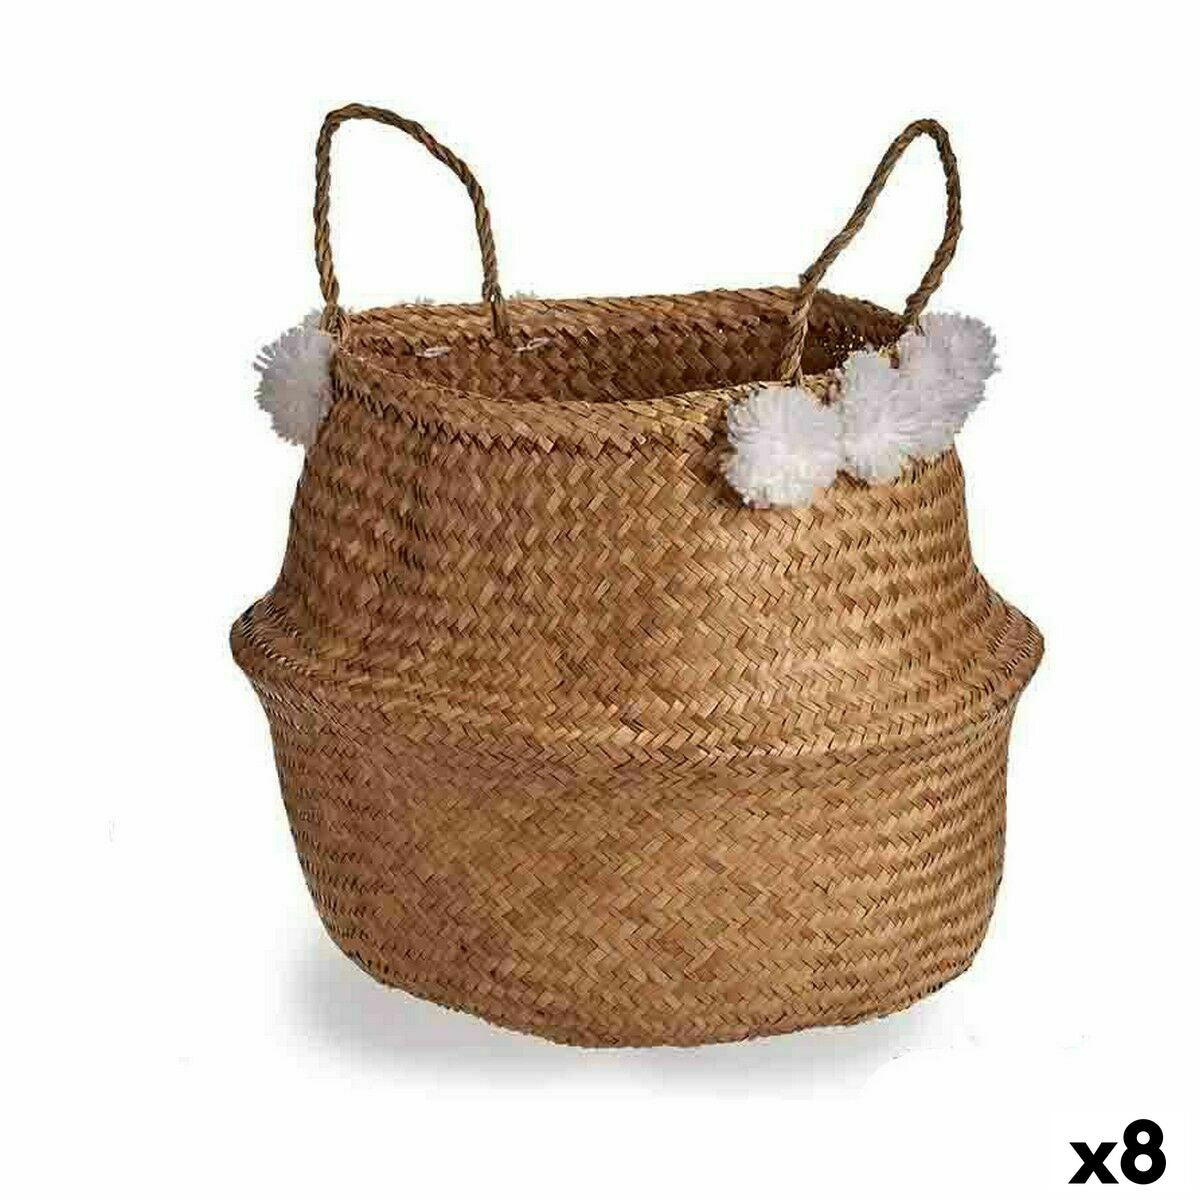 Decorative basket Pompoms White Natural Strings 8 L 32 x 30 x 32 cm (8 parts)